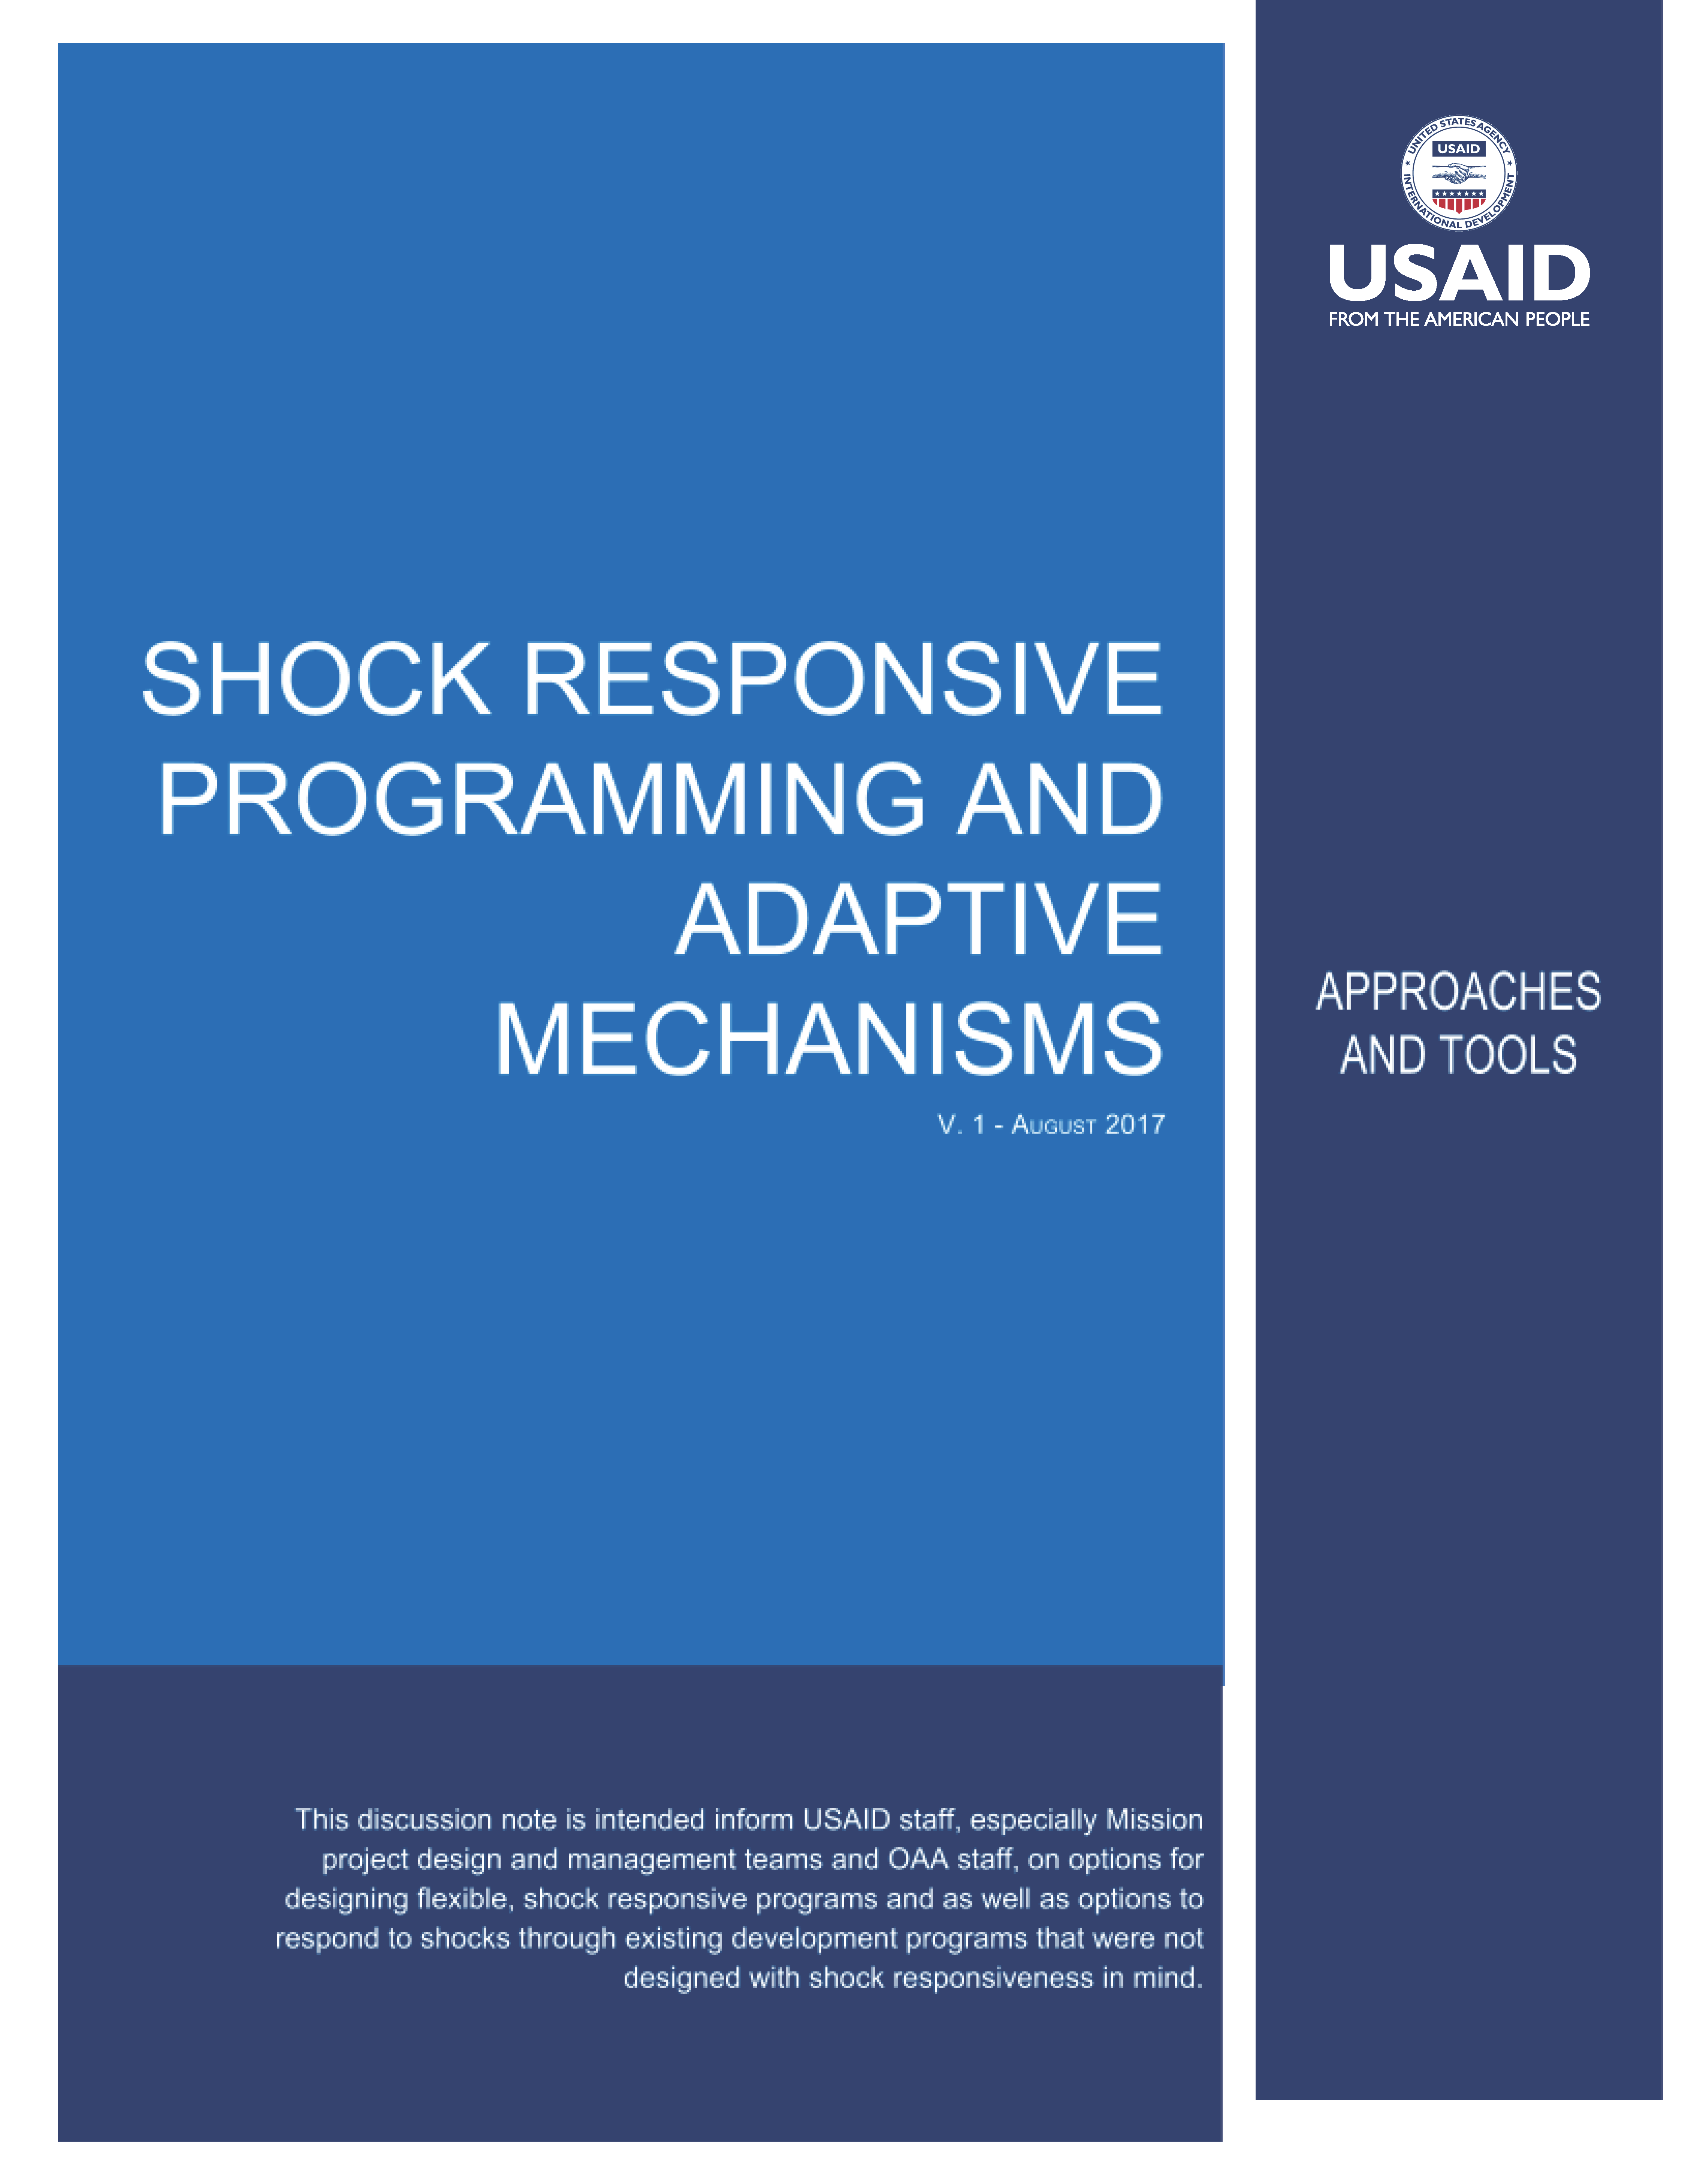 Page de couverture pour la programmation réactive aux chocs et les mécanismes adaptatifs